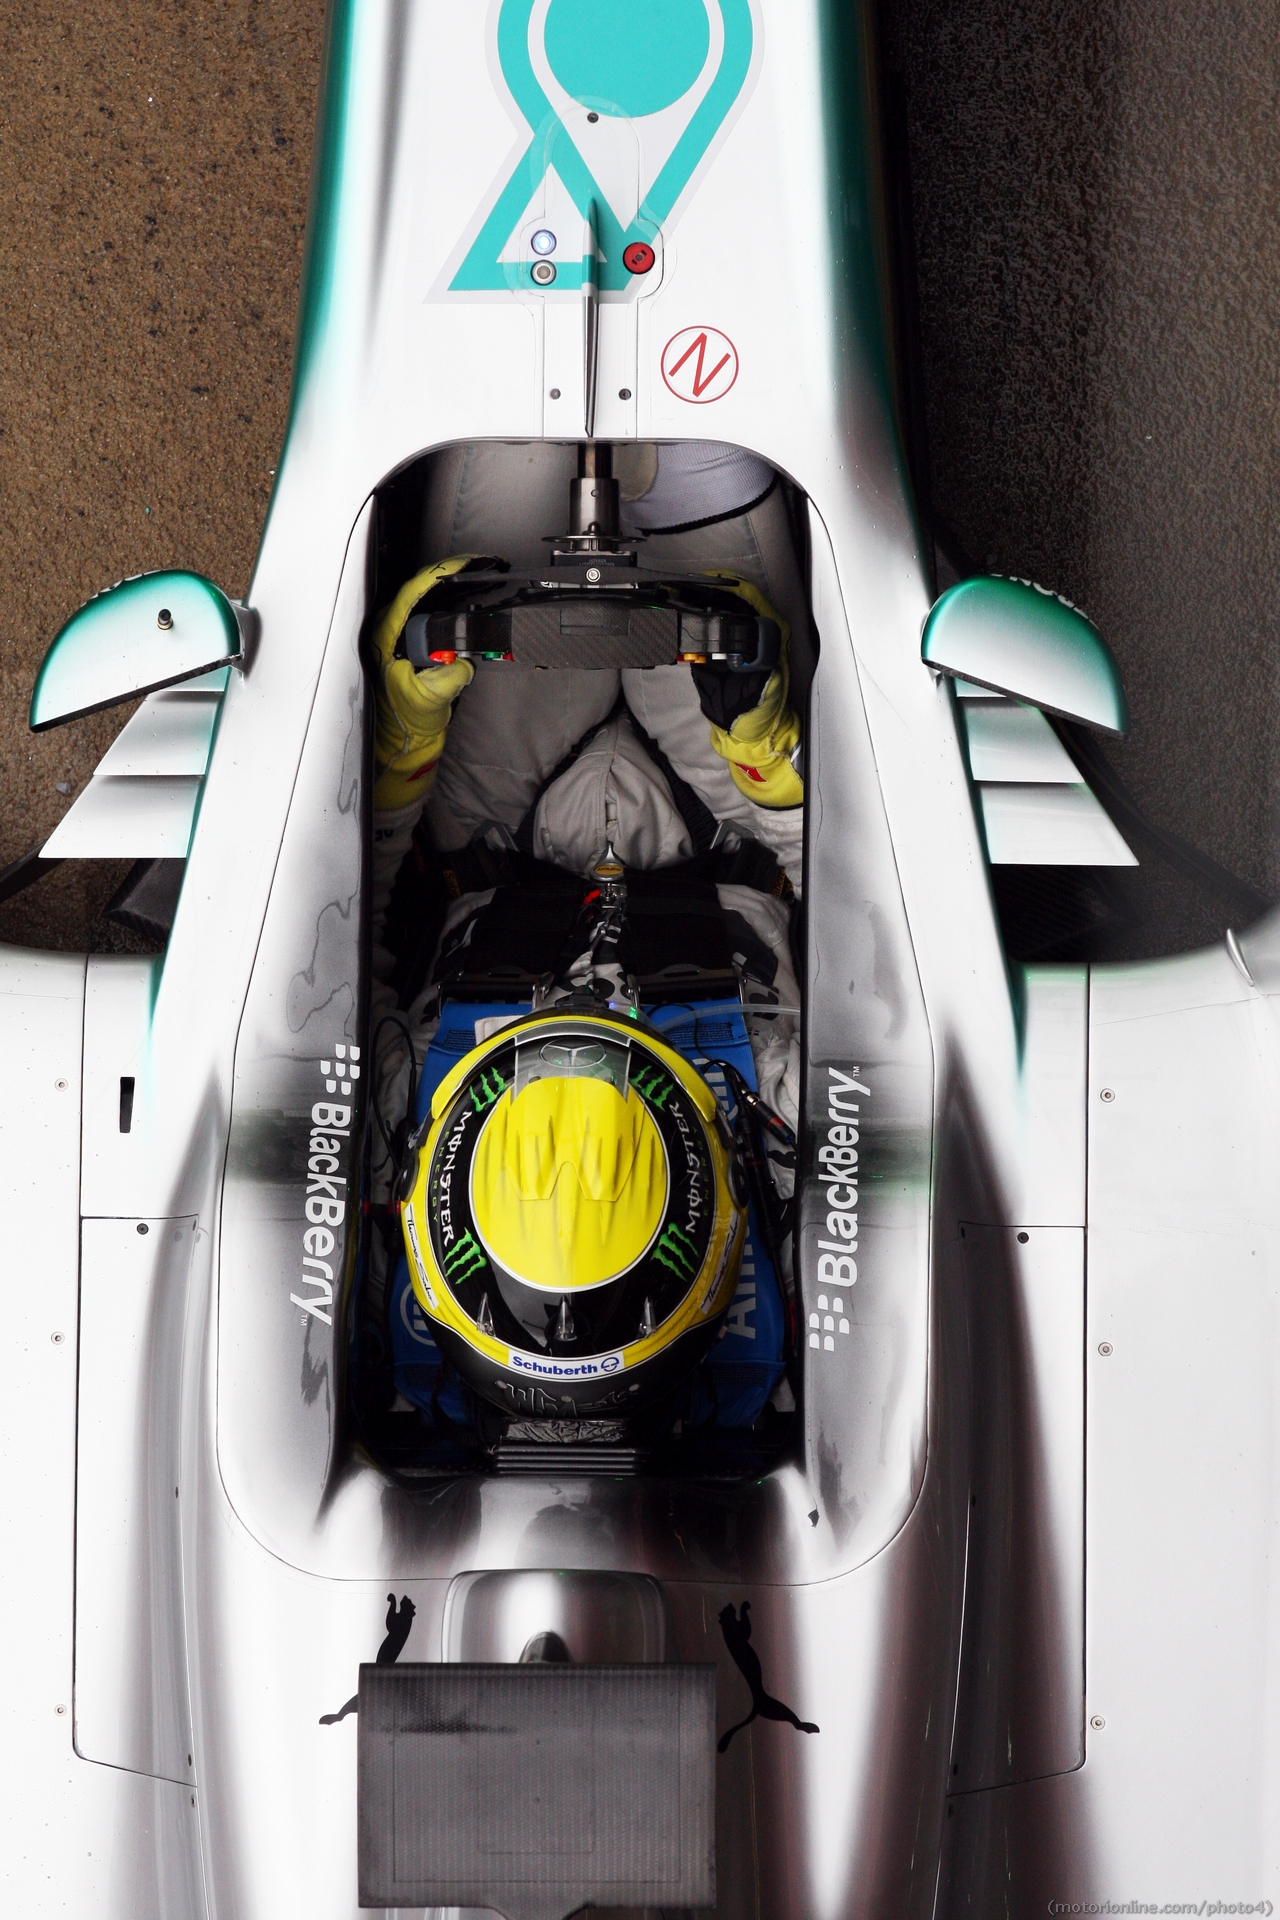 Nico Rosberg (GER) Mercedes AMG F1 W04.
01.03.2013. 